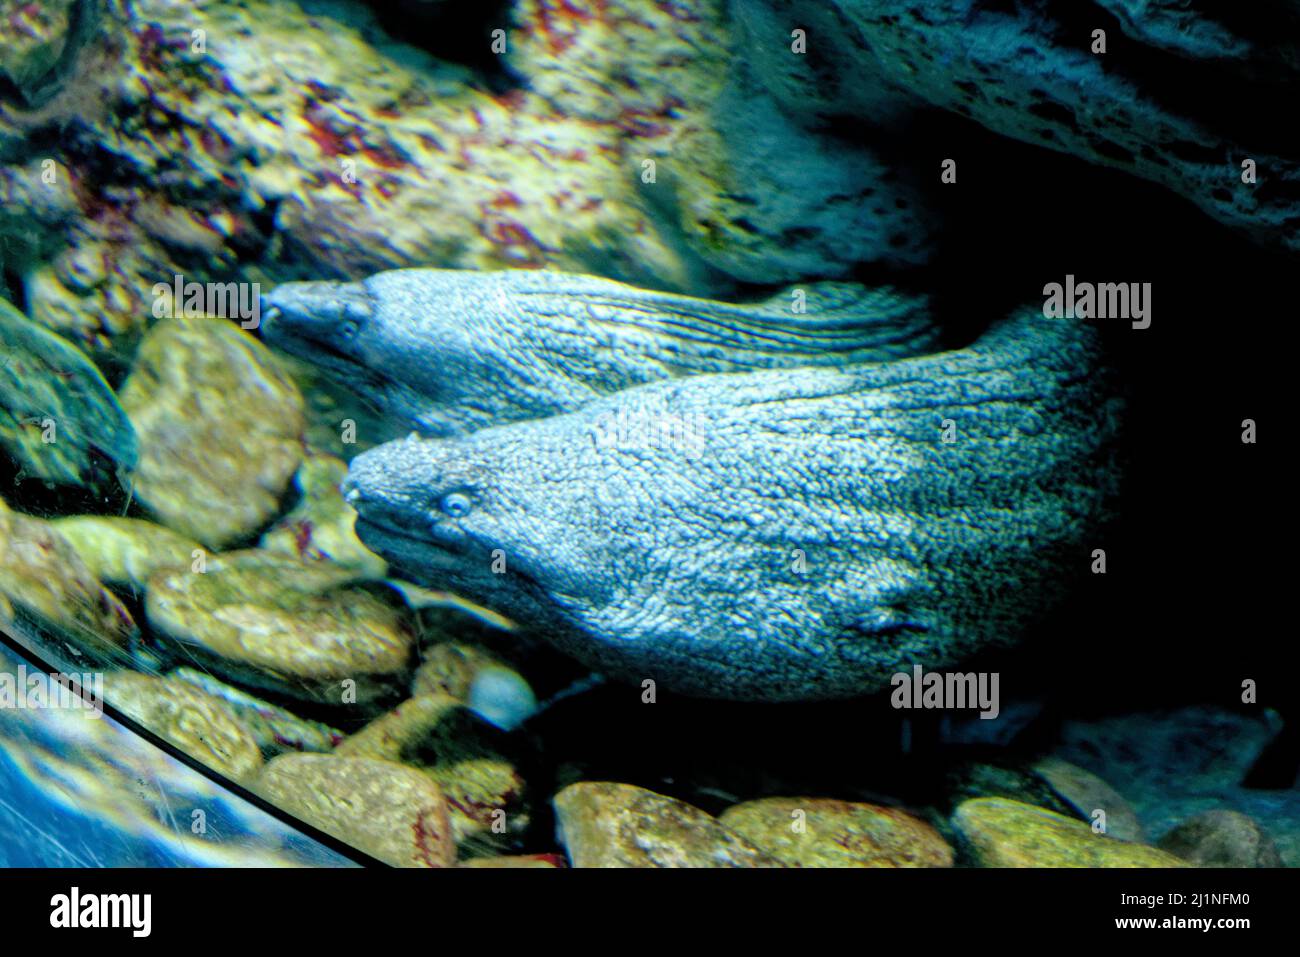 Die Mittelmeermoräne ist ein Fisch der Muränen-Familie. Sein Biss kann für den Menschen gefährlich sein. Stockfoto